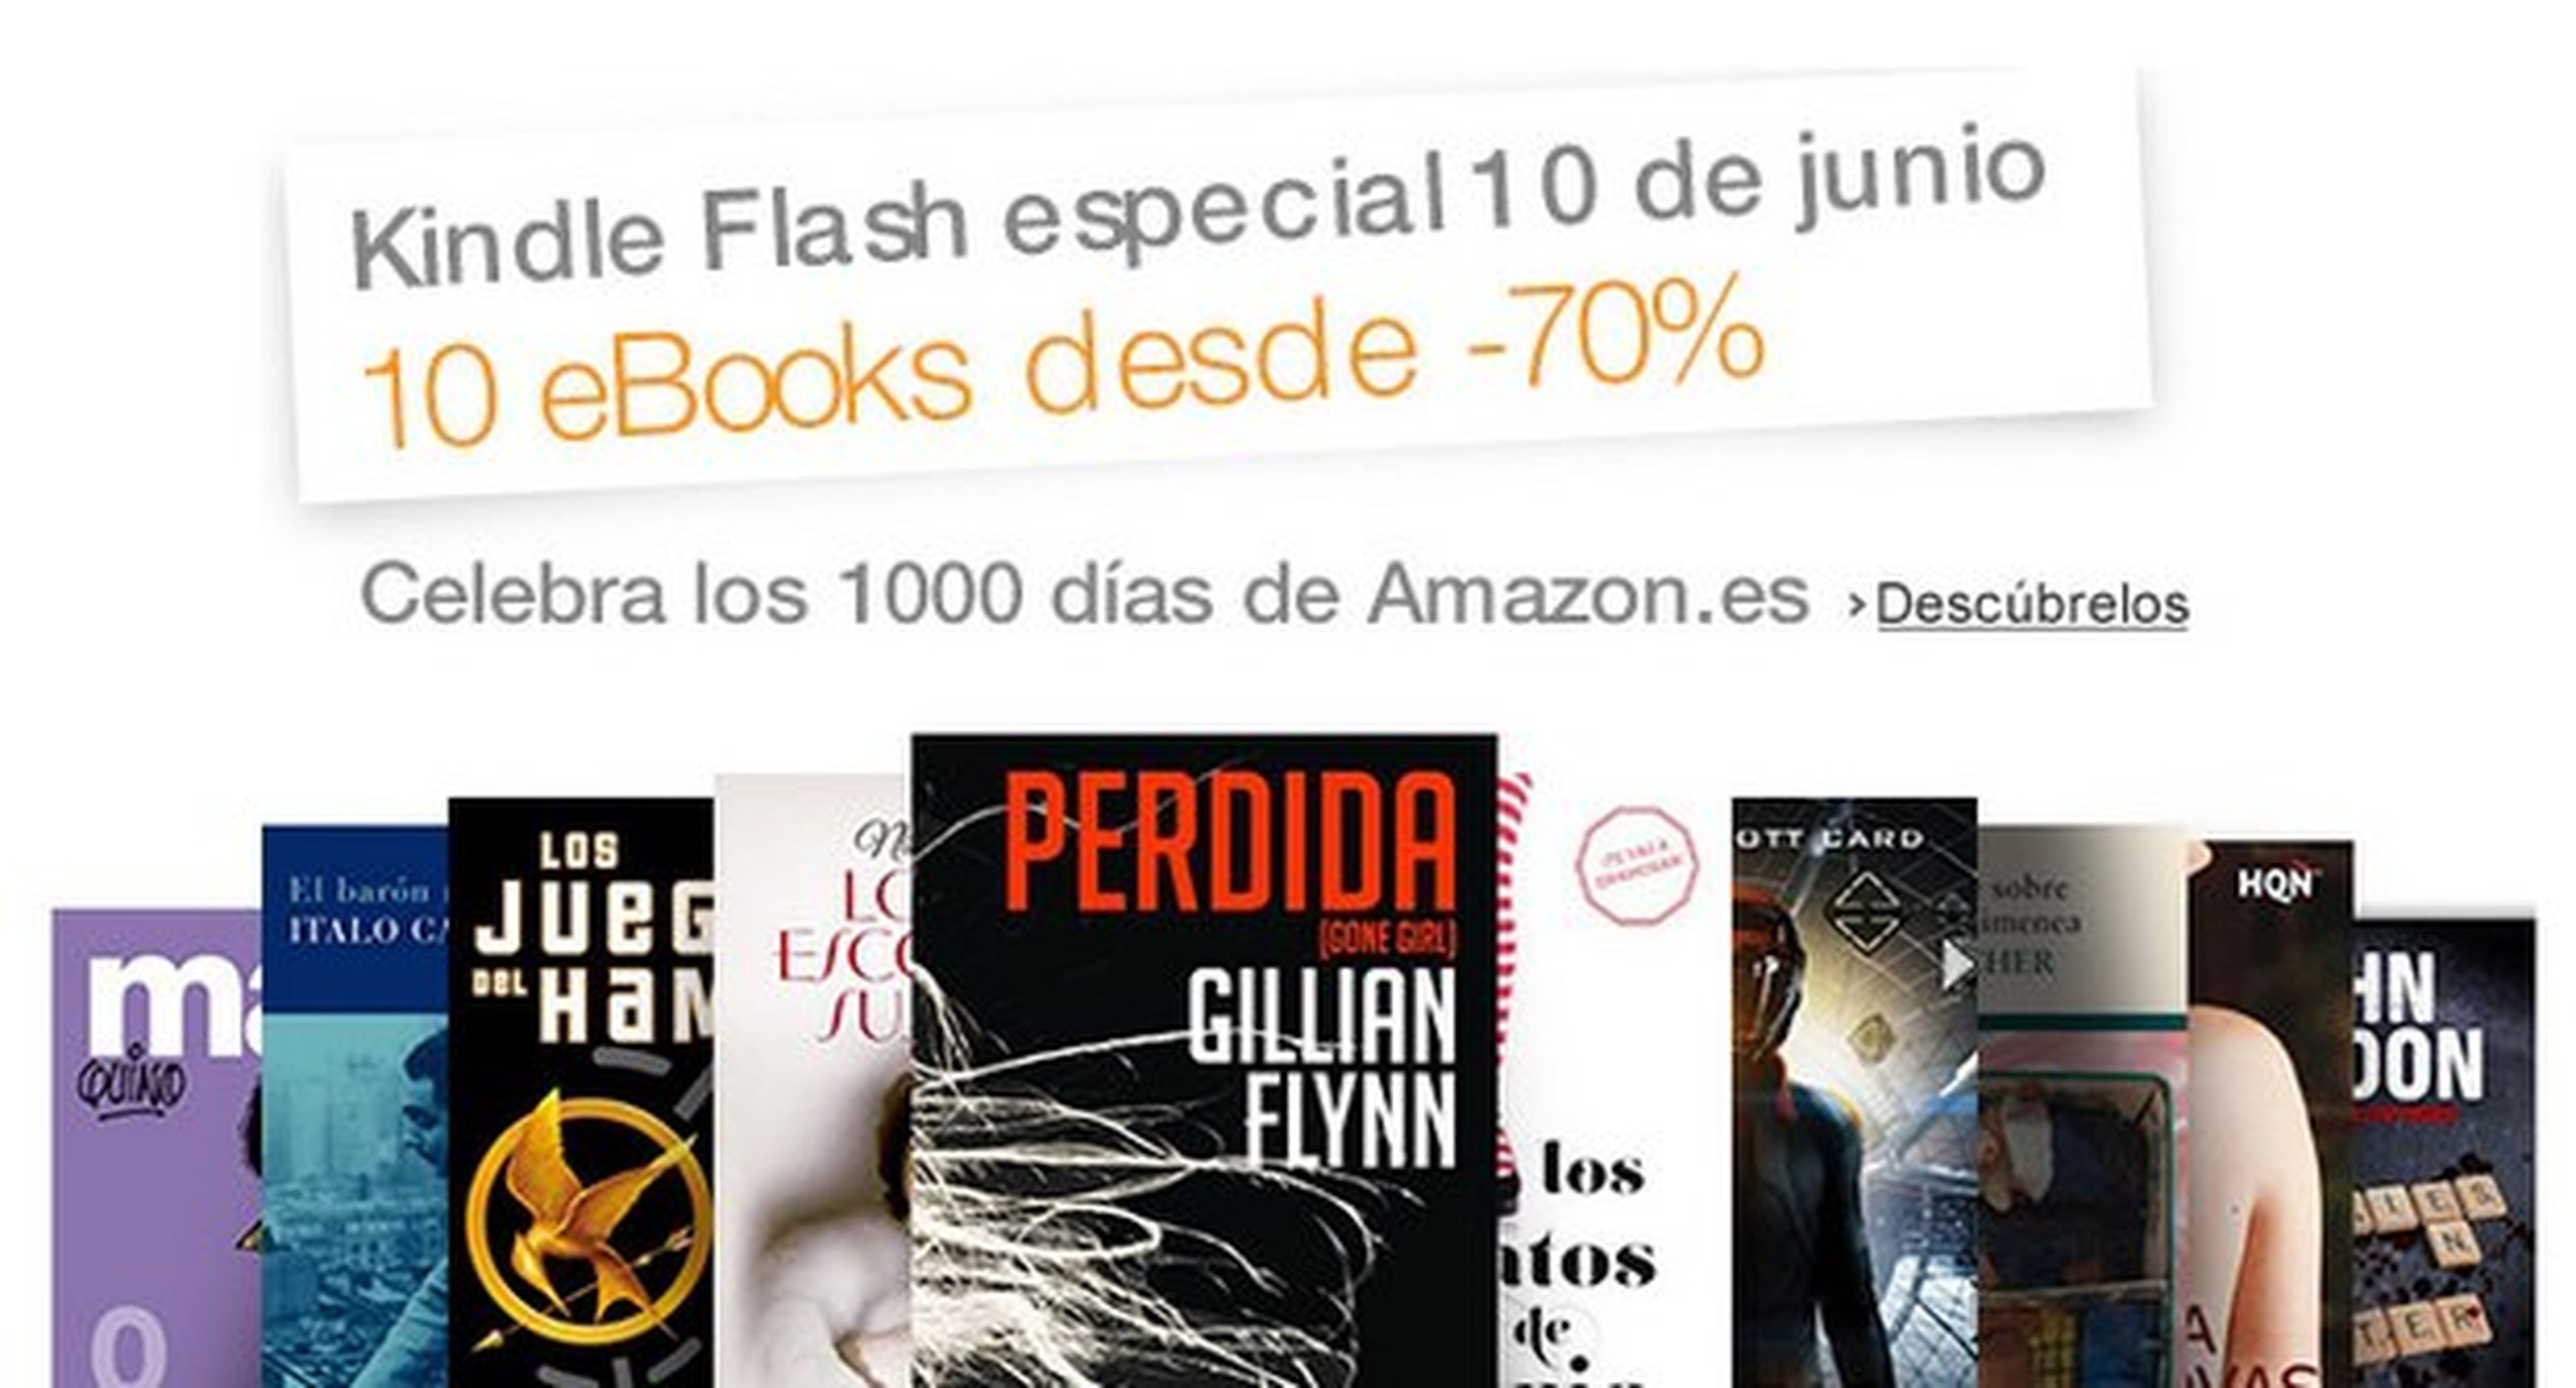 1000 días de Amazon: ofertas